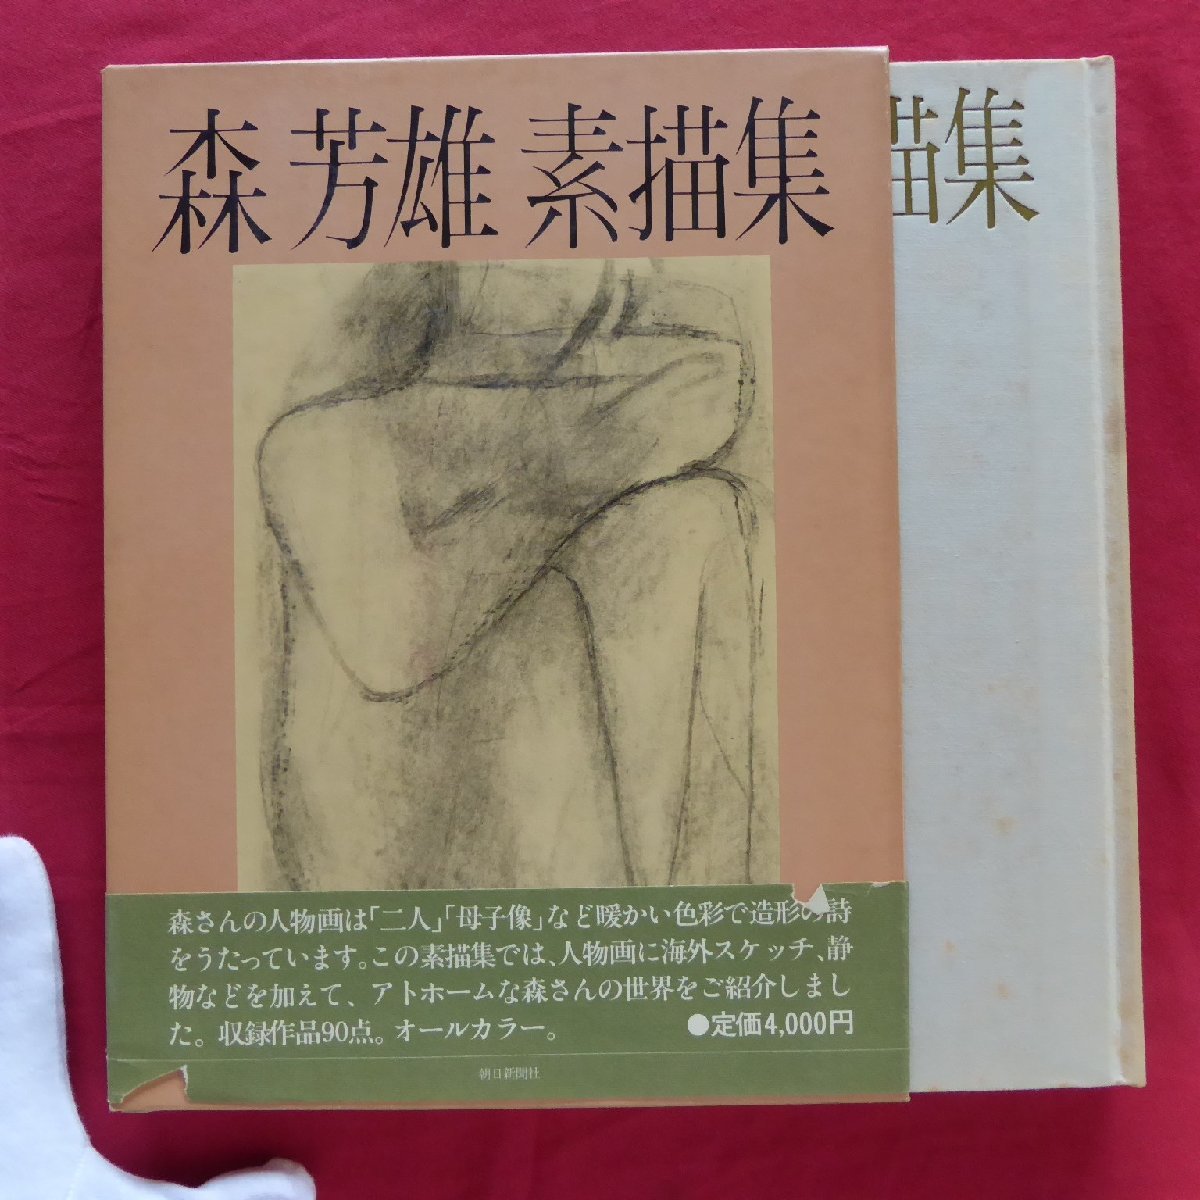 a9 [Colección de bocetos de Mori Yoshio/Asahi Shimbun, 1980], Cuadro, Libro de arte, Recopilación, Libro de arte